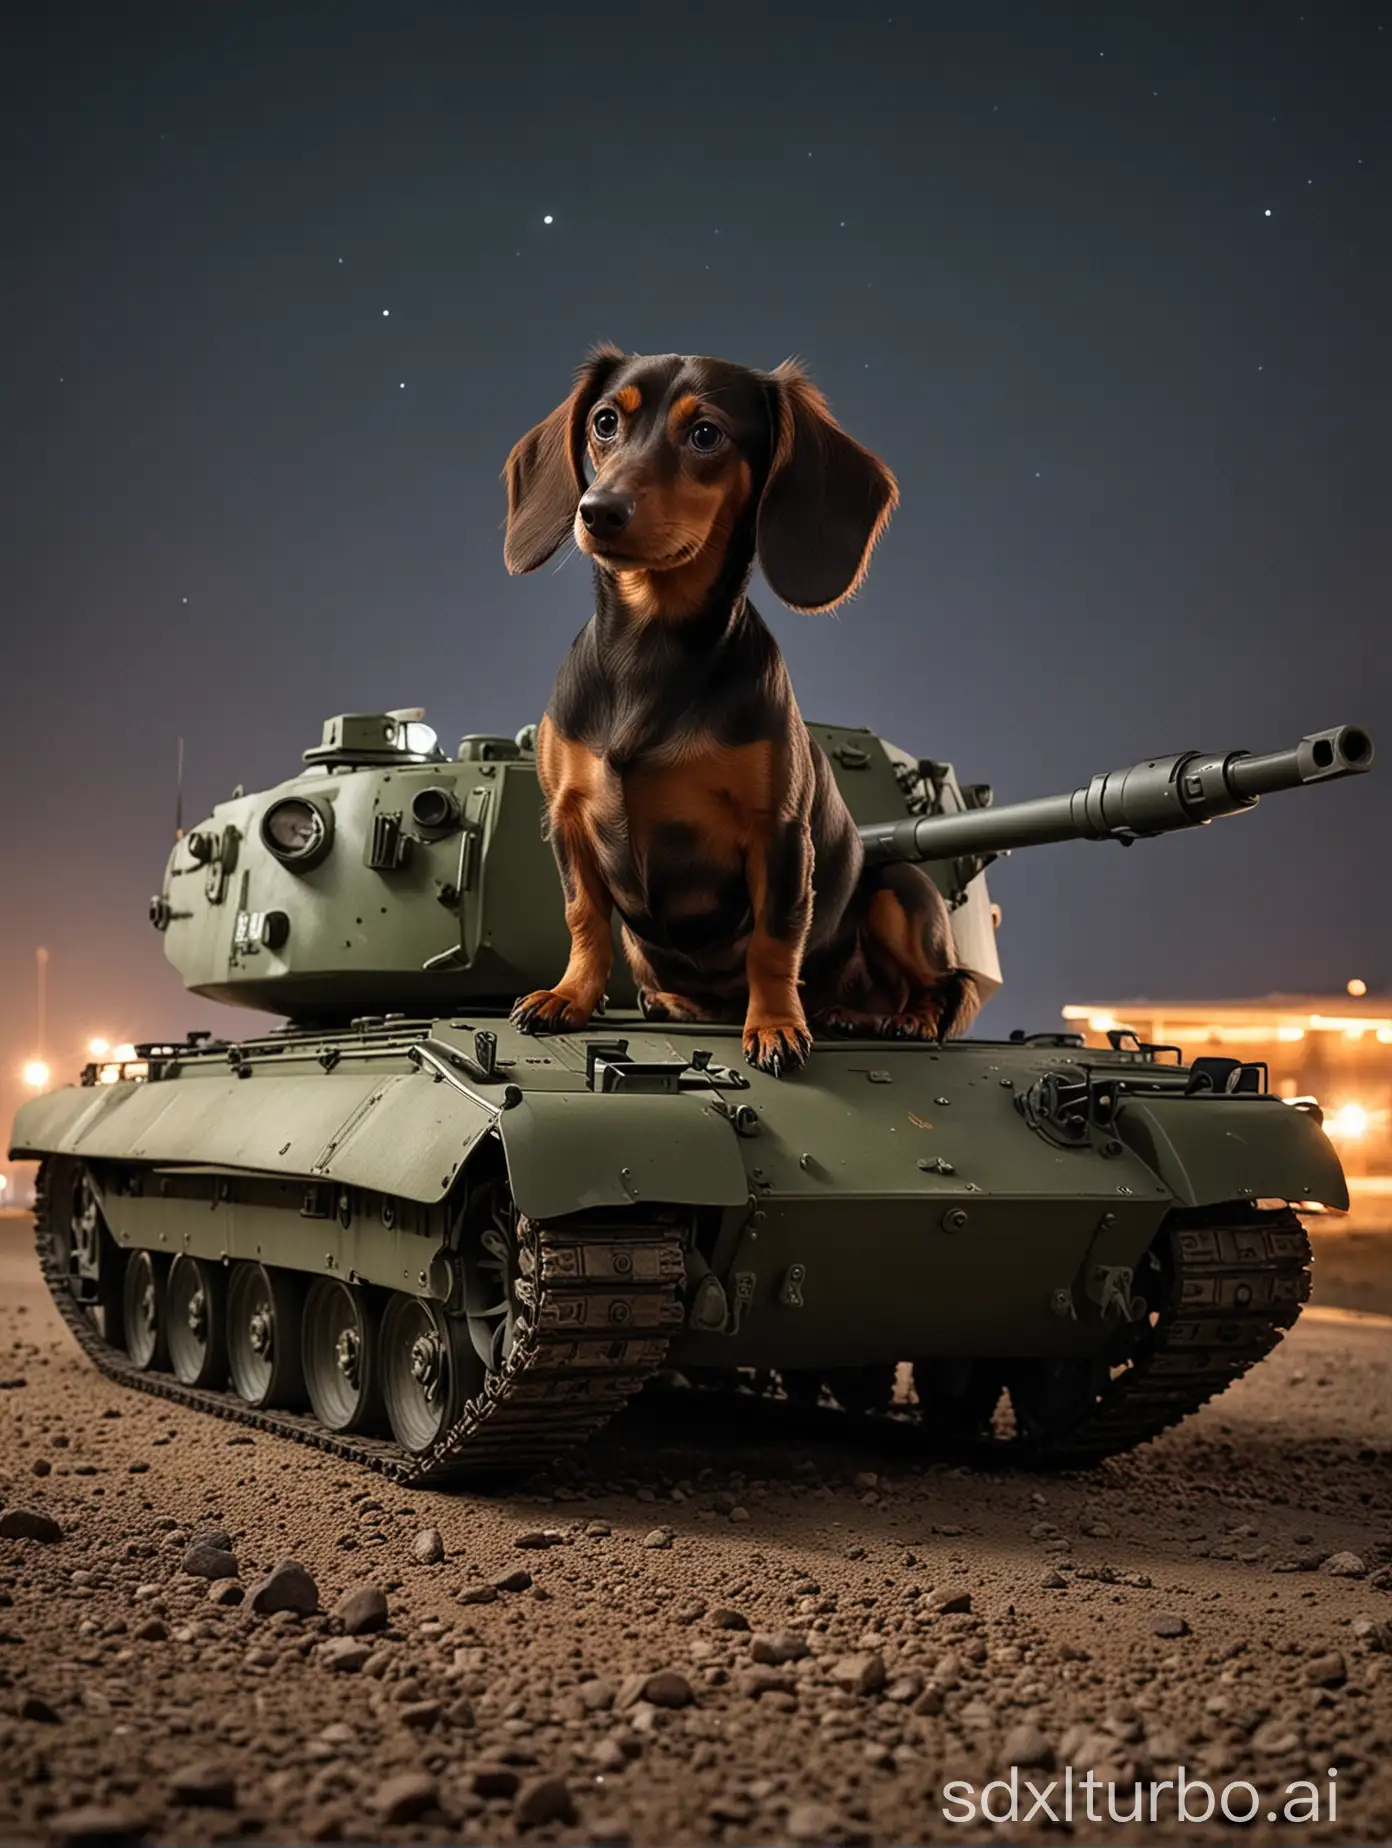 Perro teckel sobre un tanque de guerra moderno en la noche 